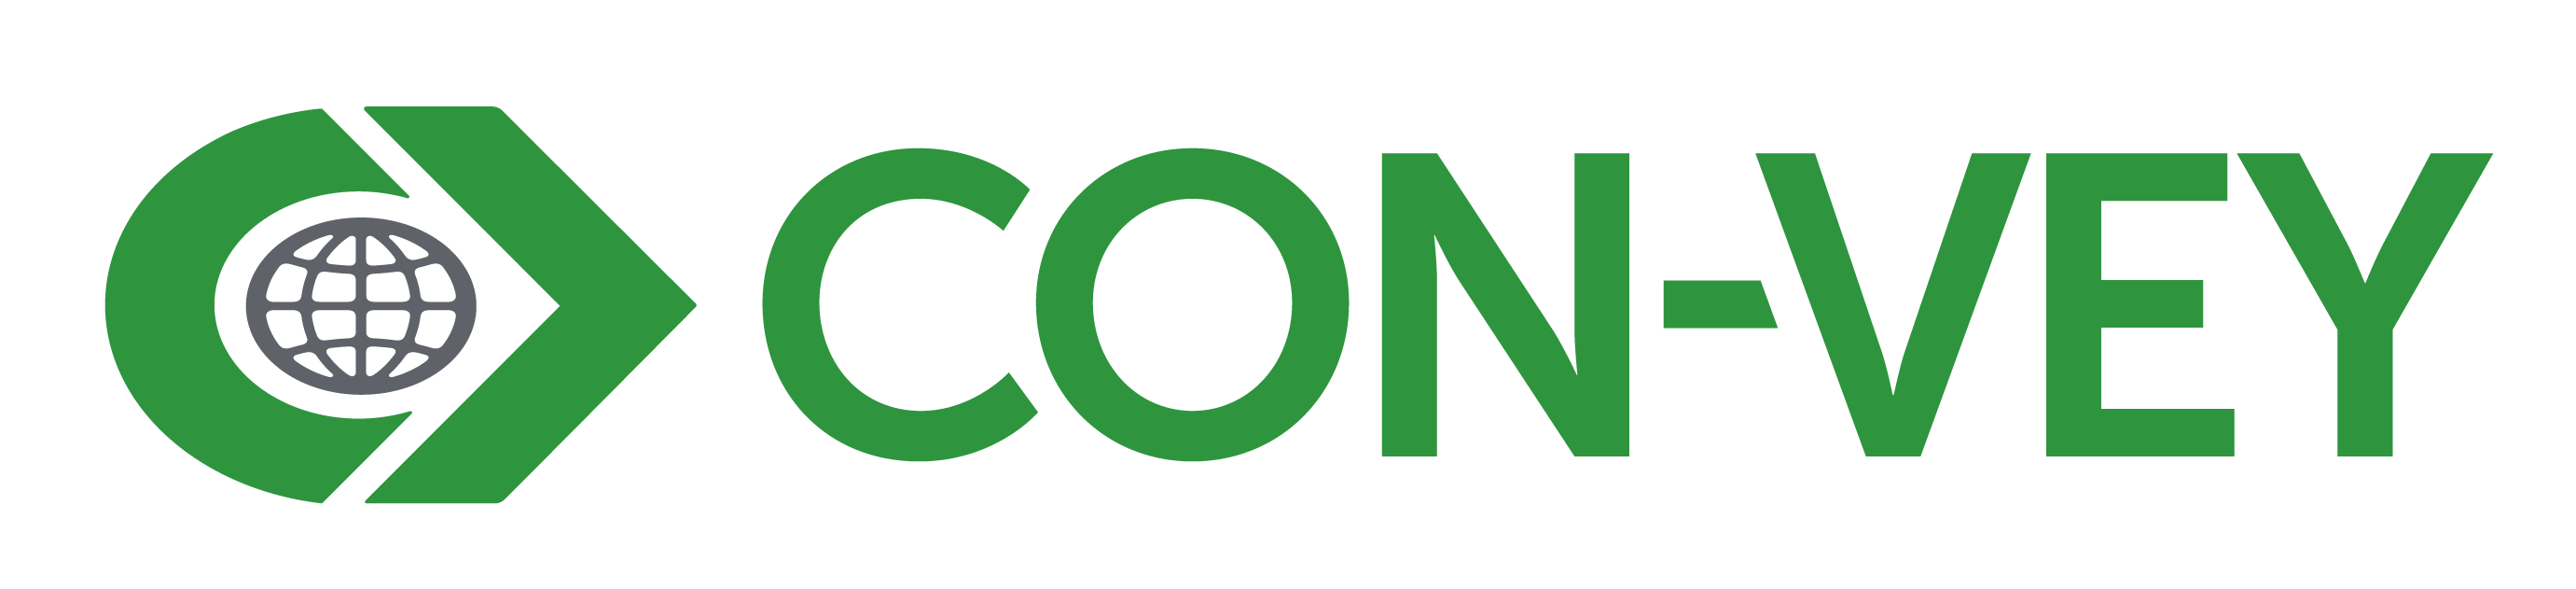 Con-Vey Company Logo